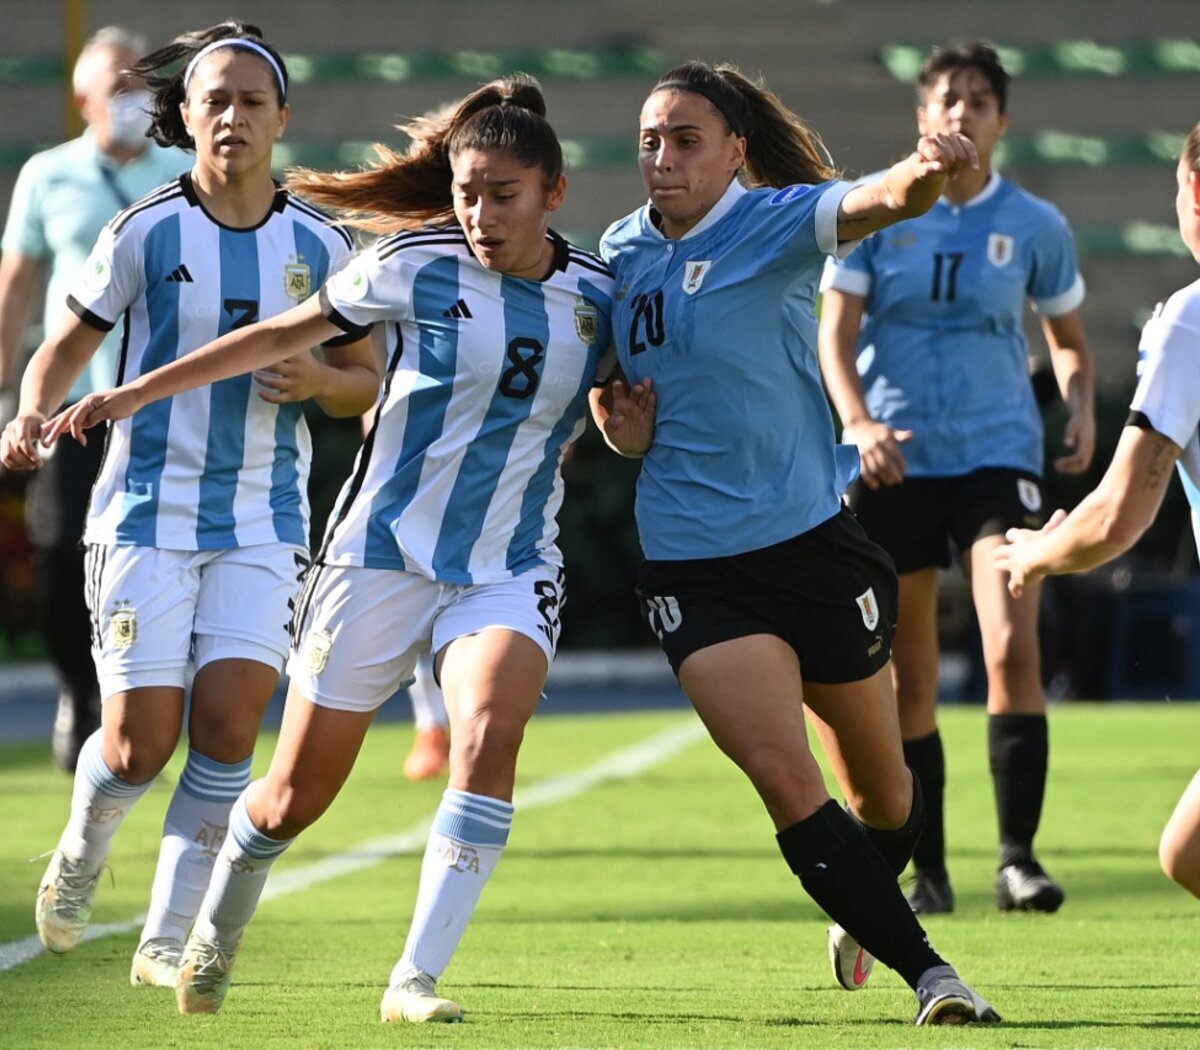 Uruguay ante el desafío de la Copa América femenina » Portal Medios Públicos